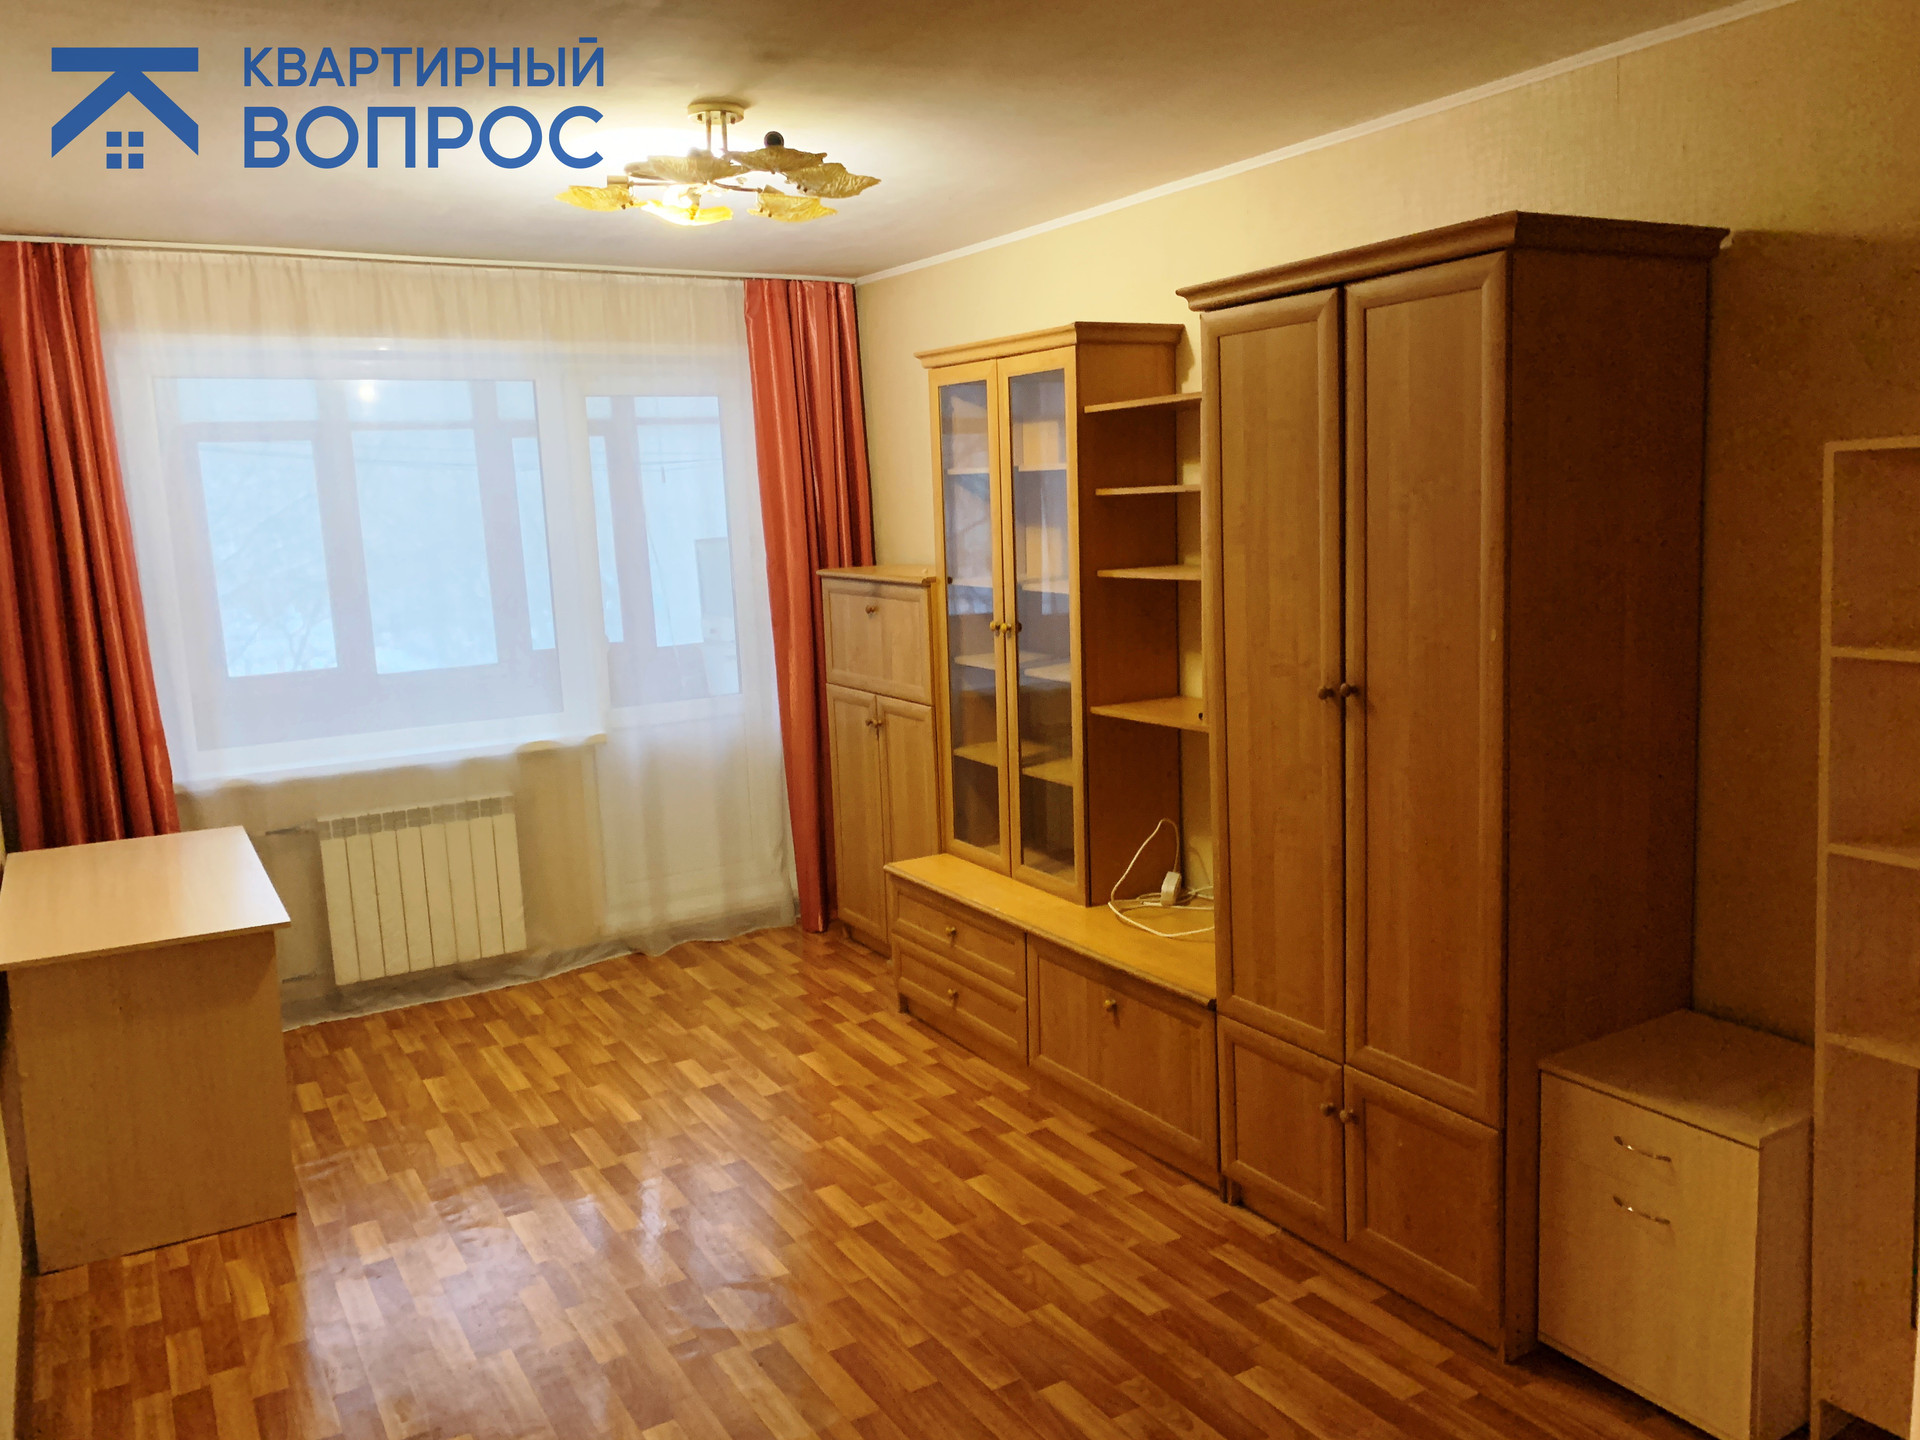 Новгород купить жилье 1 комнатную. Нижний Новгород Борский район суточная квартира. Купить однокомнатную квартиру бульвар Космонавтов 11.